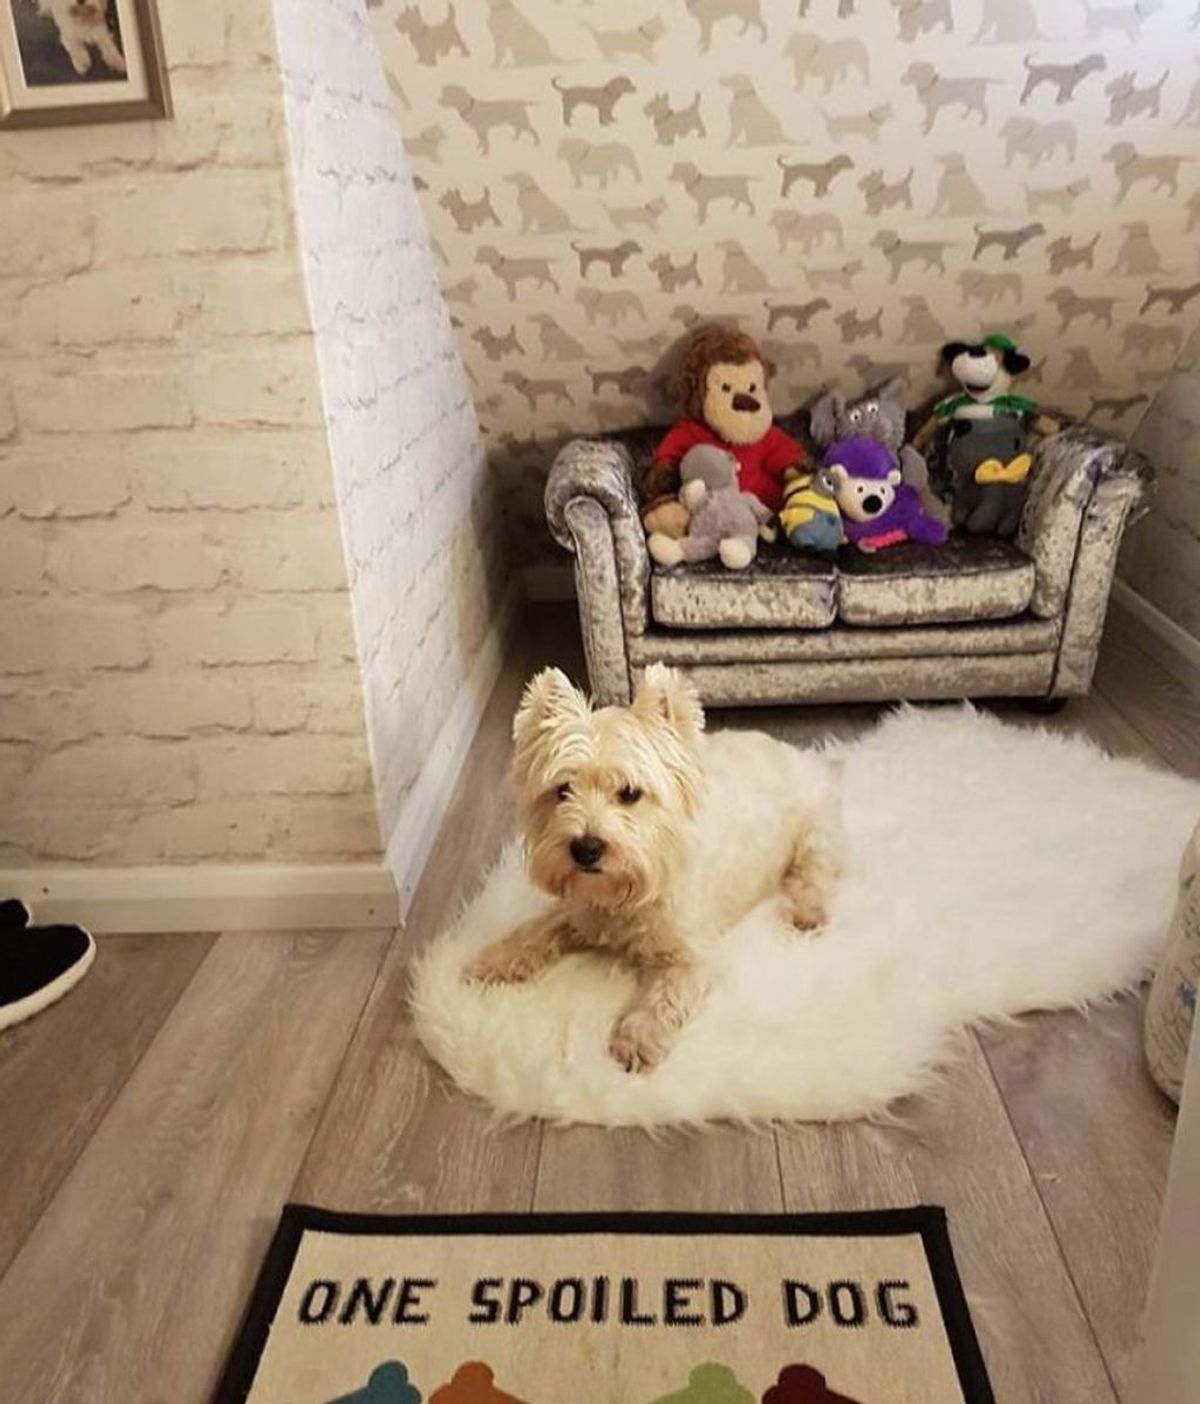 Le hace una habitación a su perro para que se sienta como uno más de la familia tras nacer su hijo